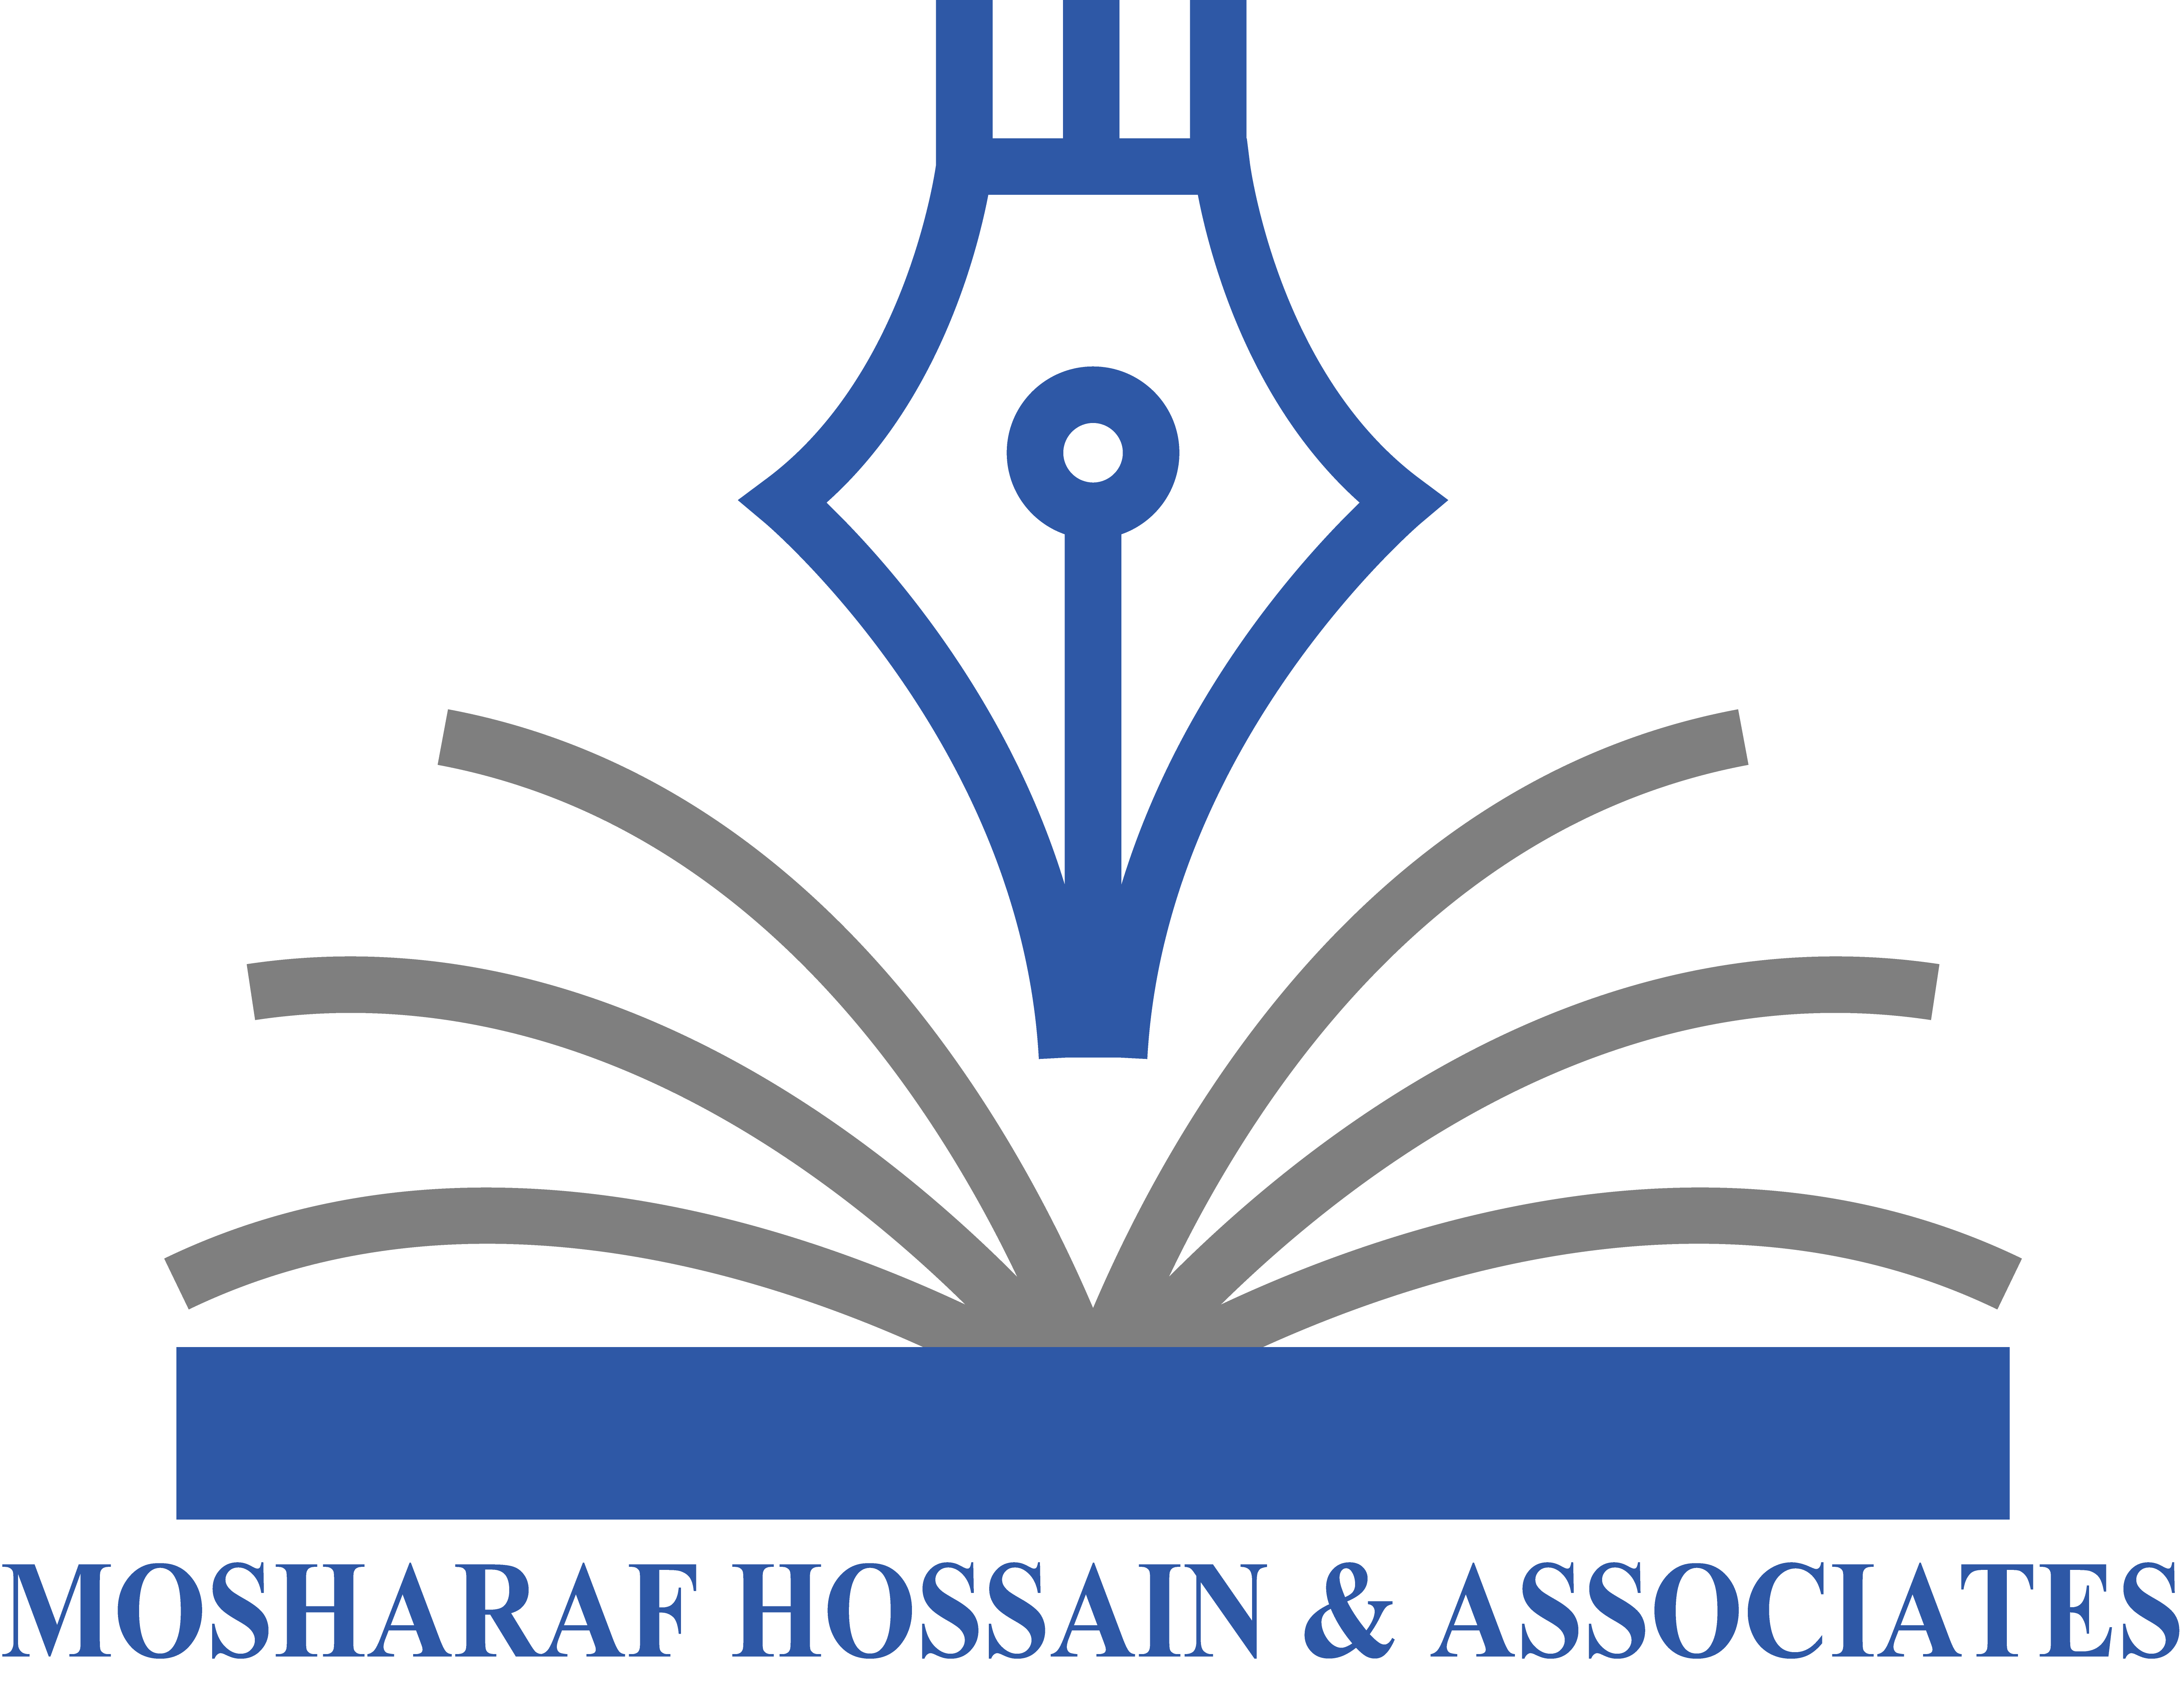 Mosharaf Hossain & Associates